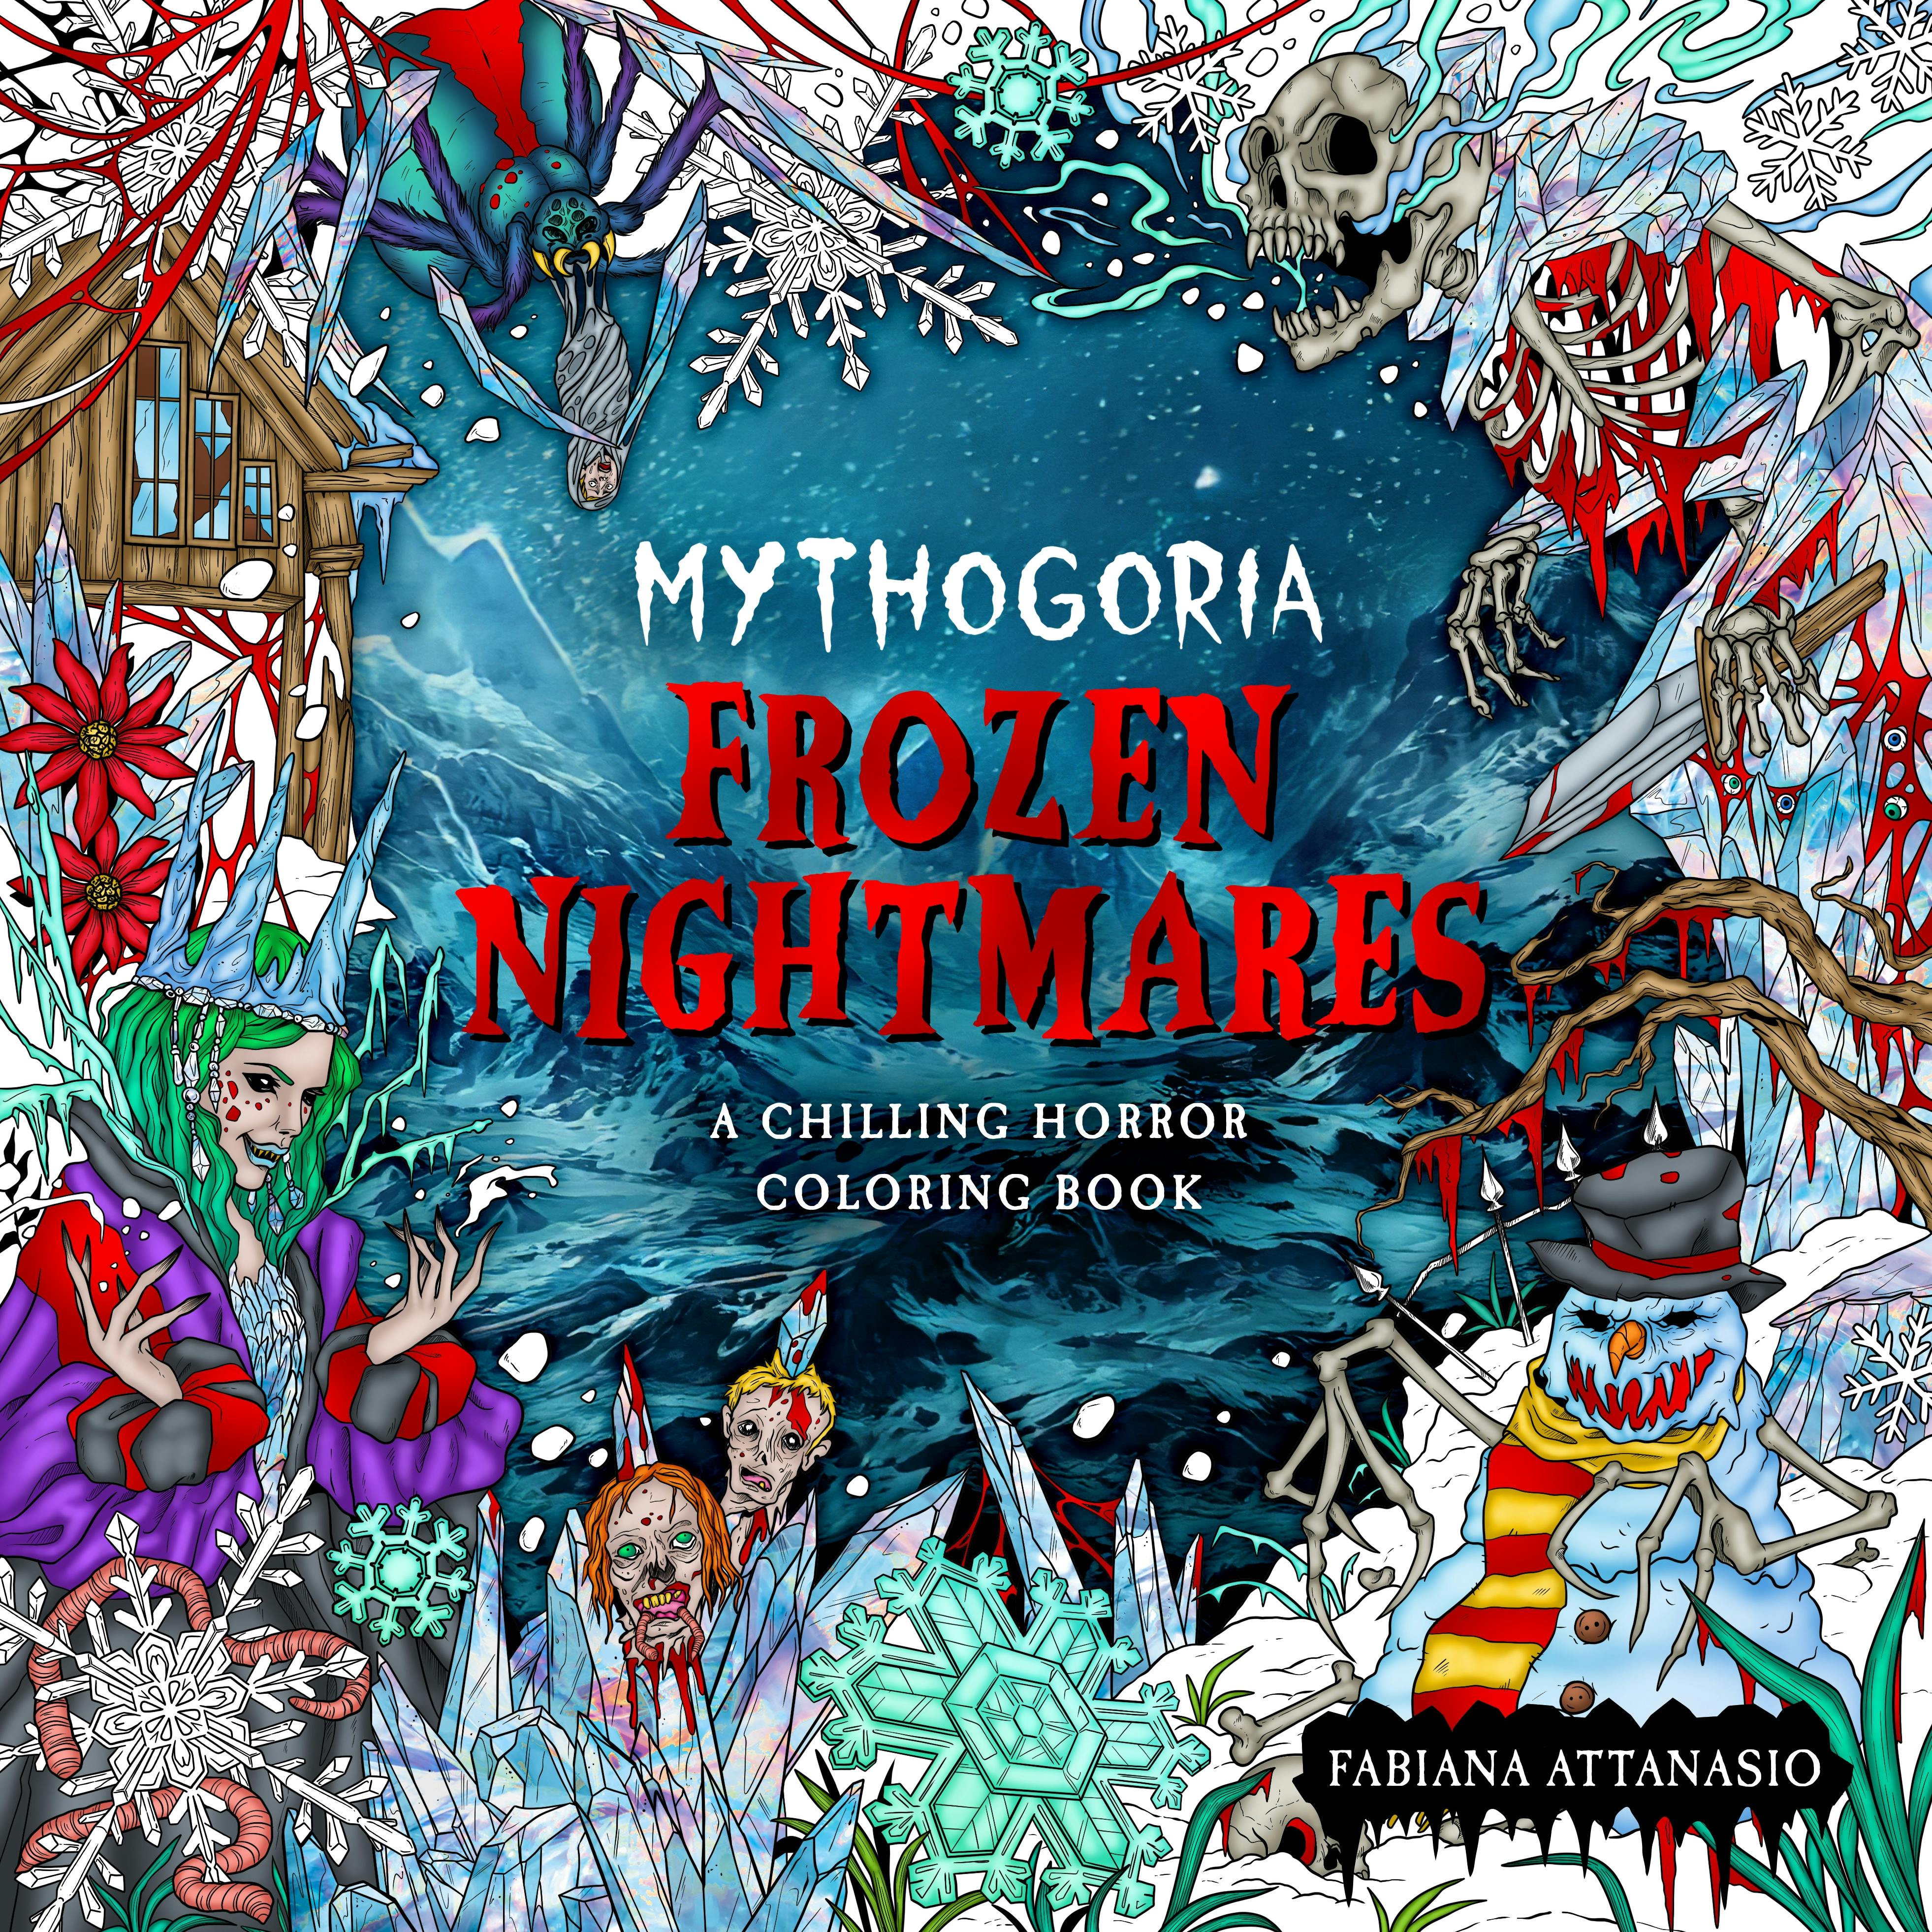 Mythogoria: Frozen Nightmares